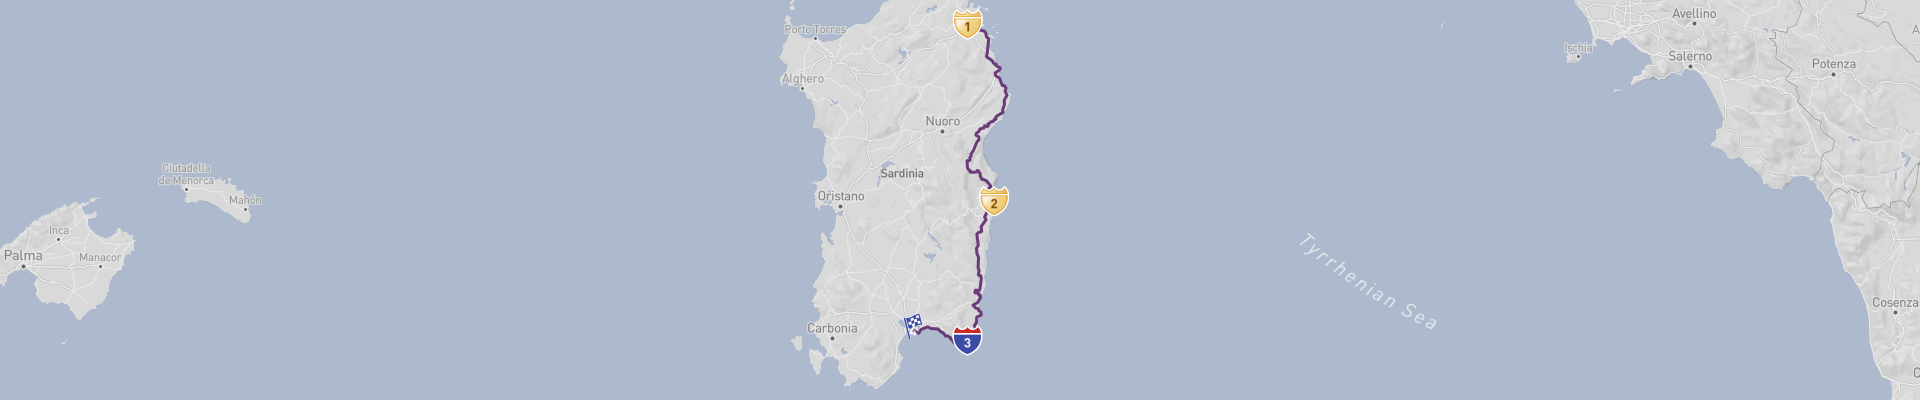 Itinerário da costa leste da Sardenha